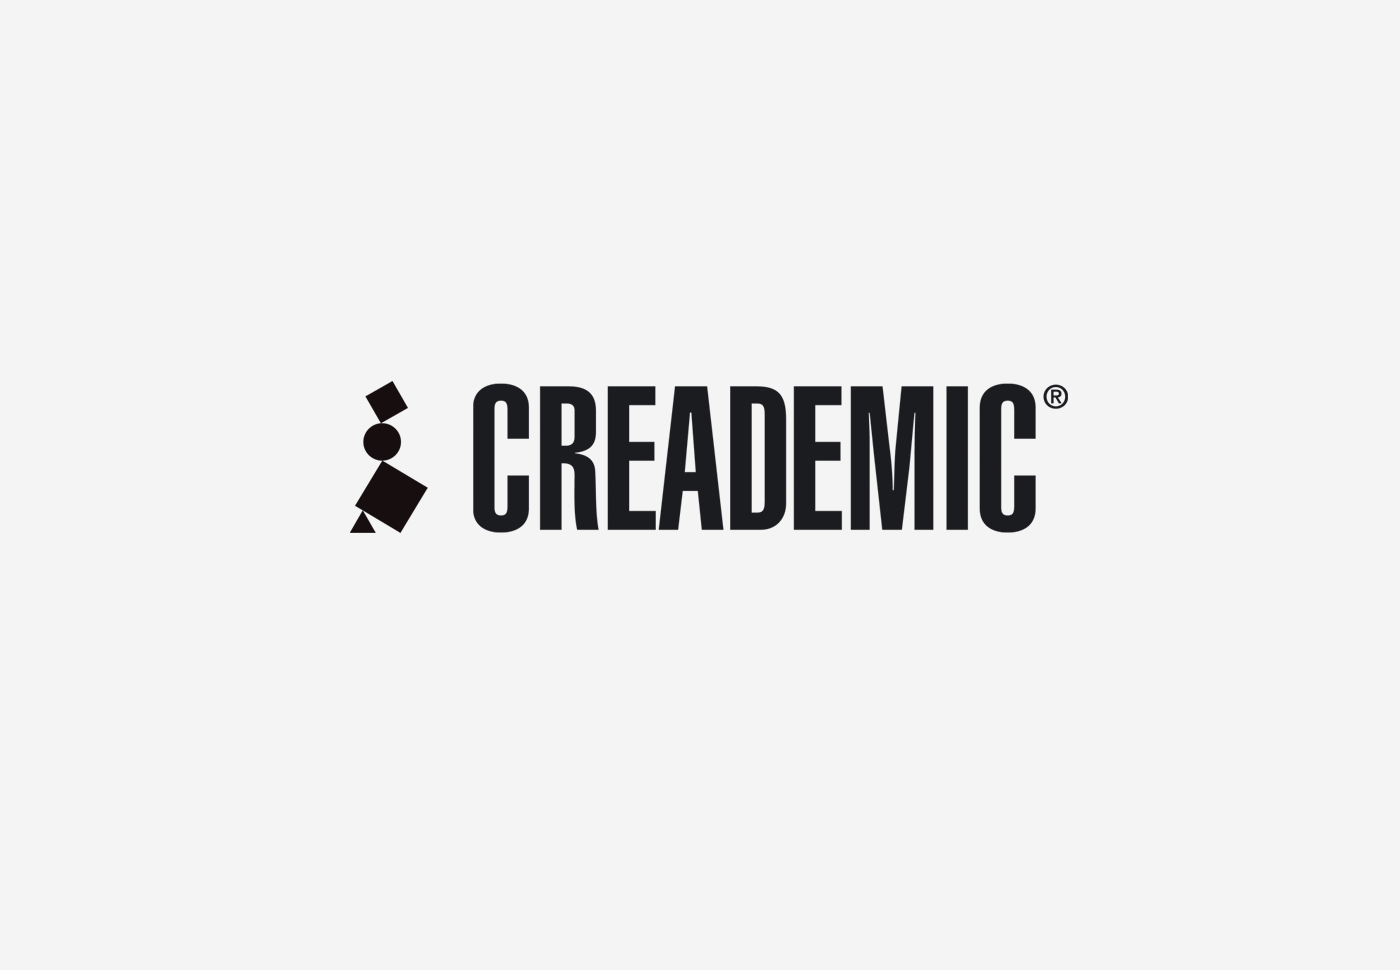 Creademic – Naming and logo